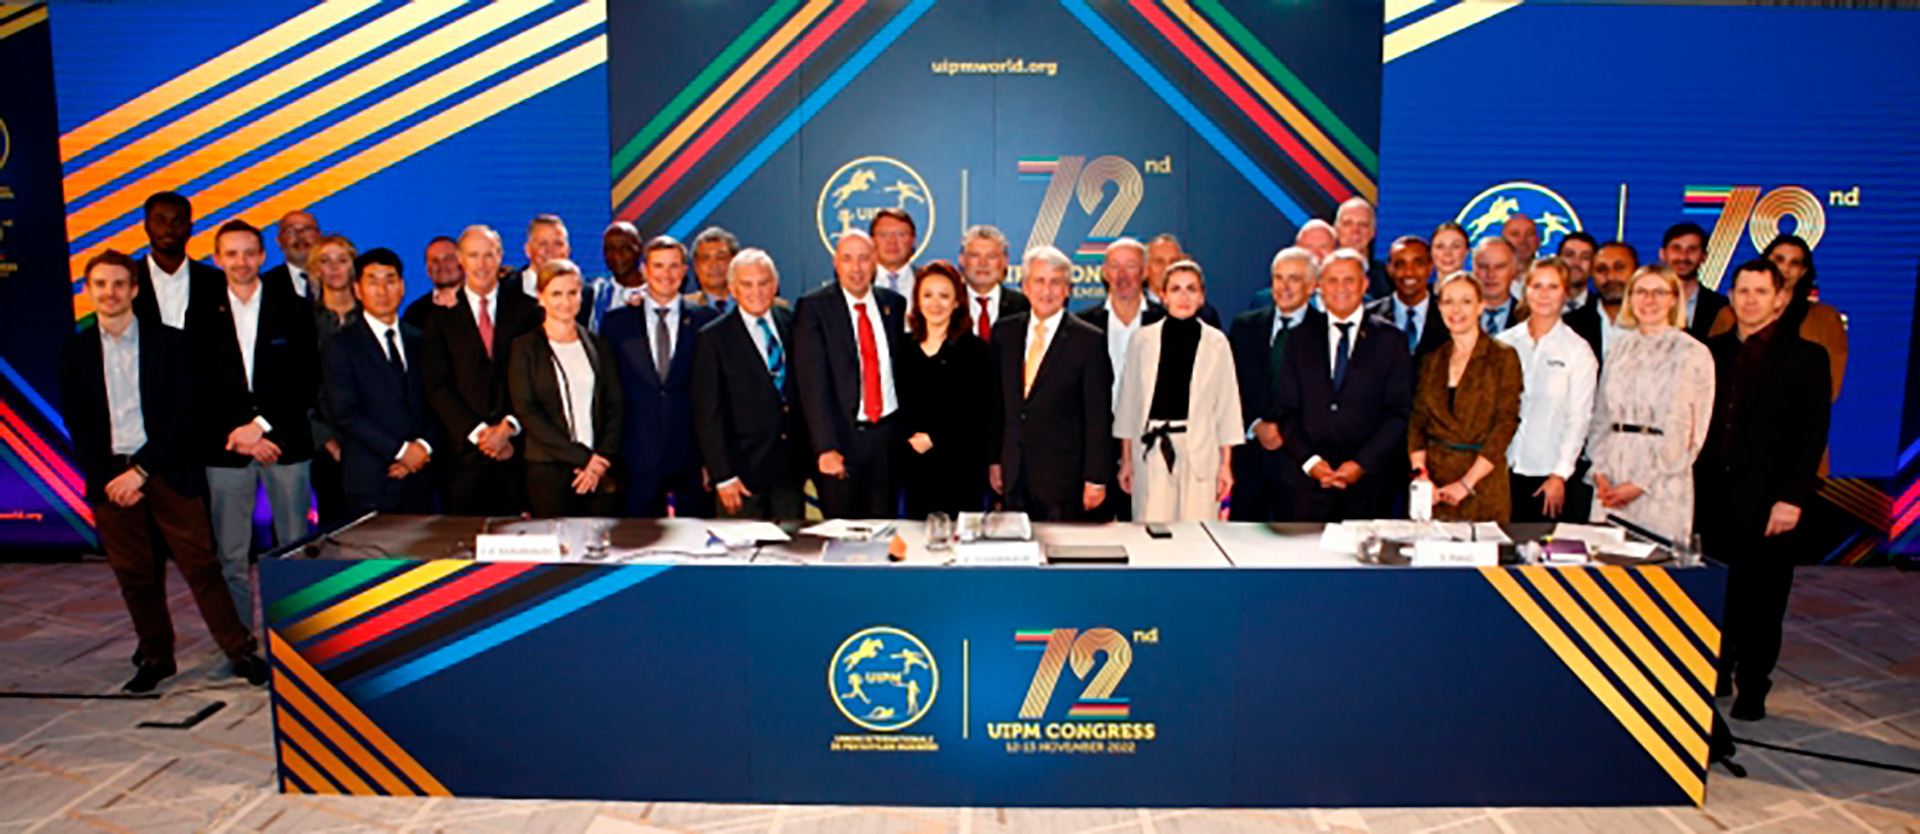 Panel de miembros del congreso de UIPM 2022